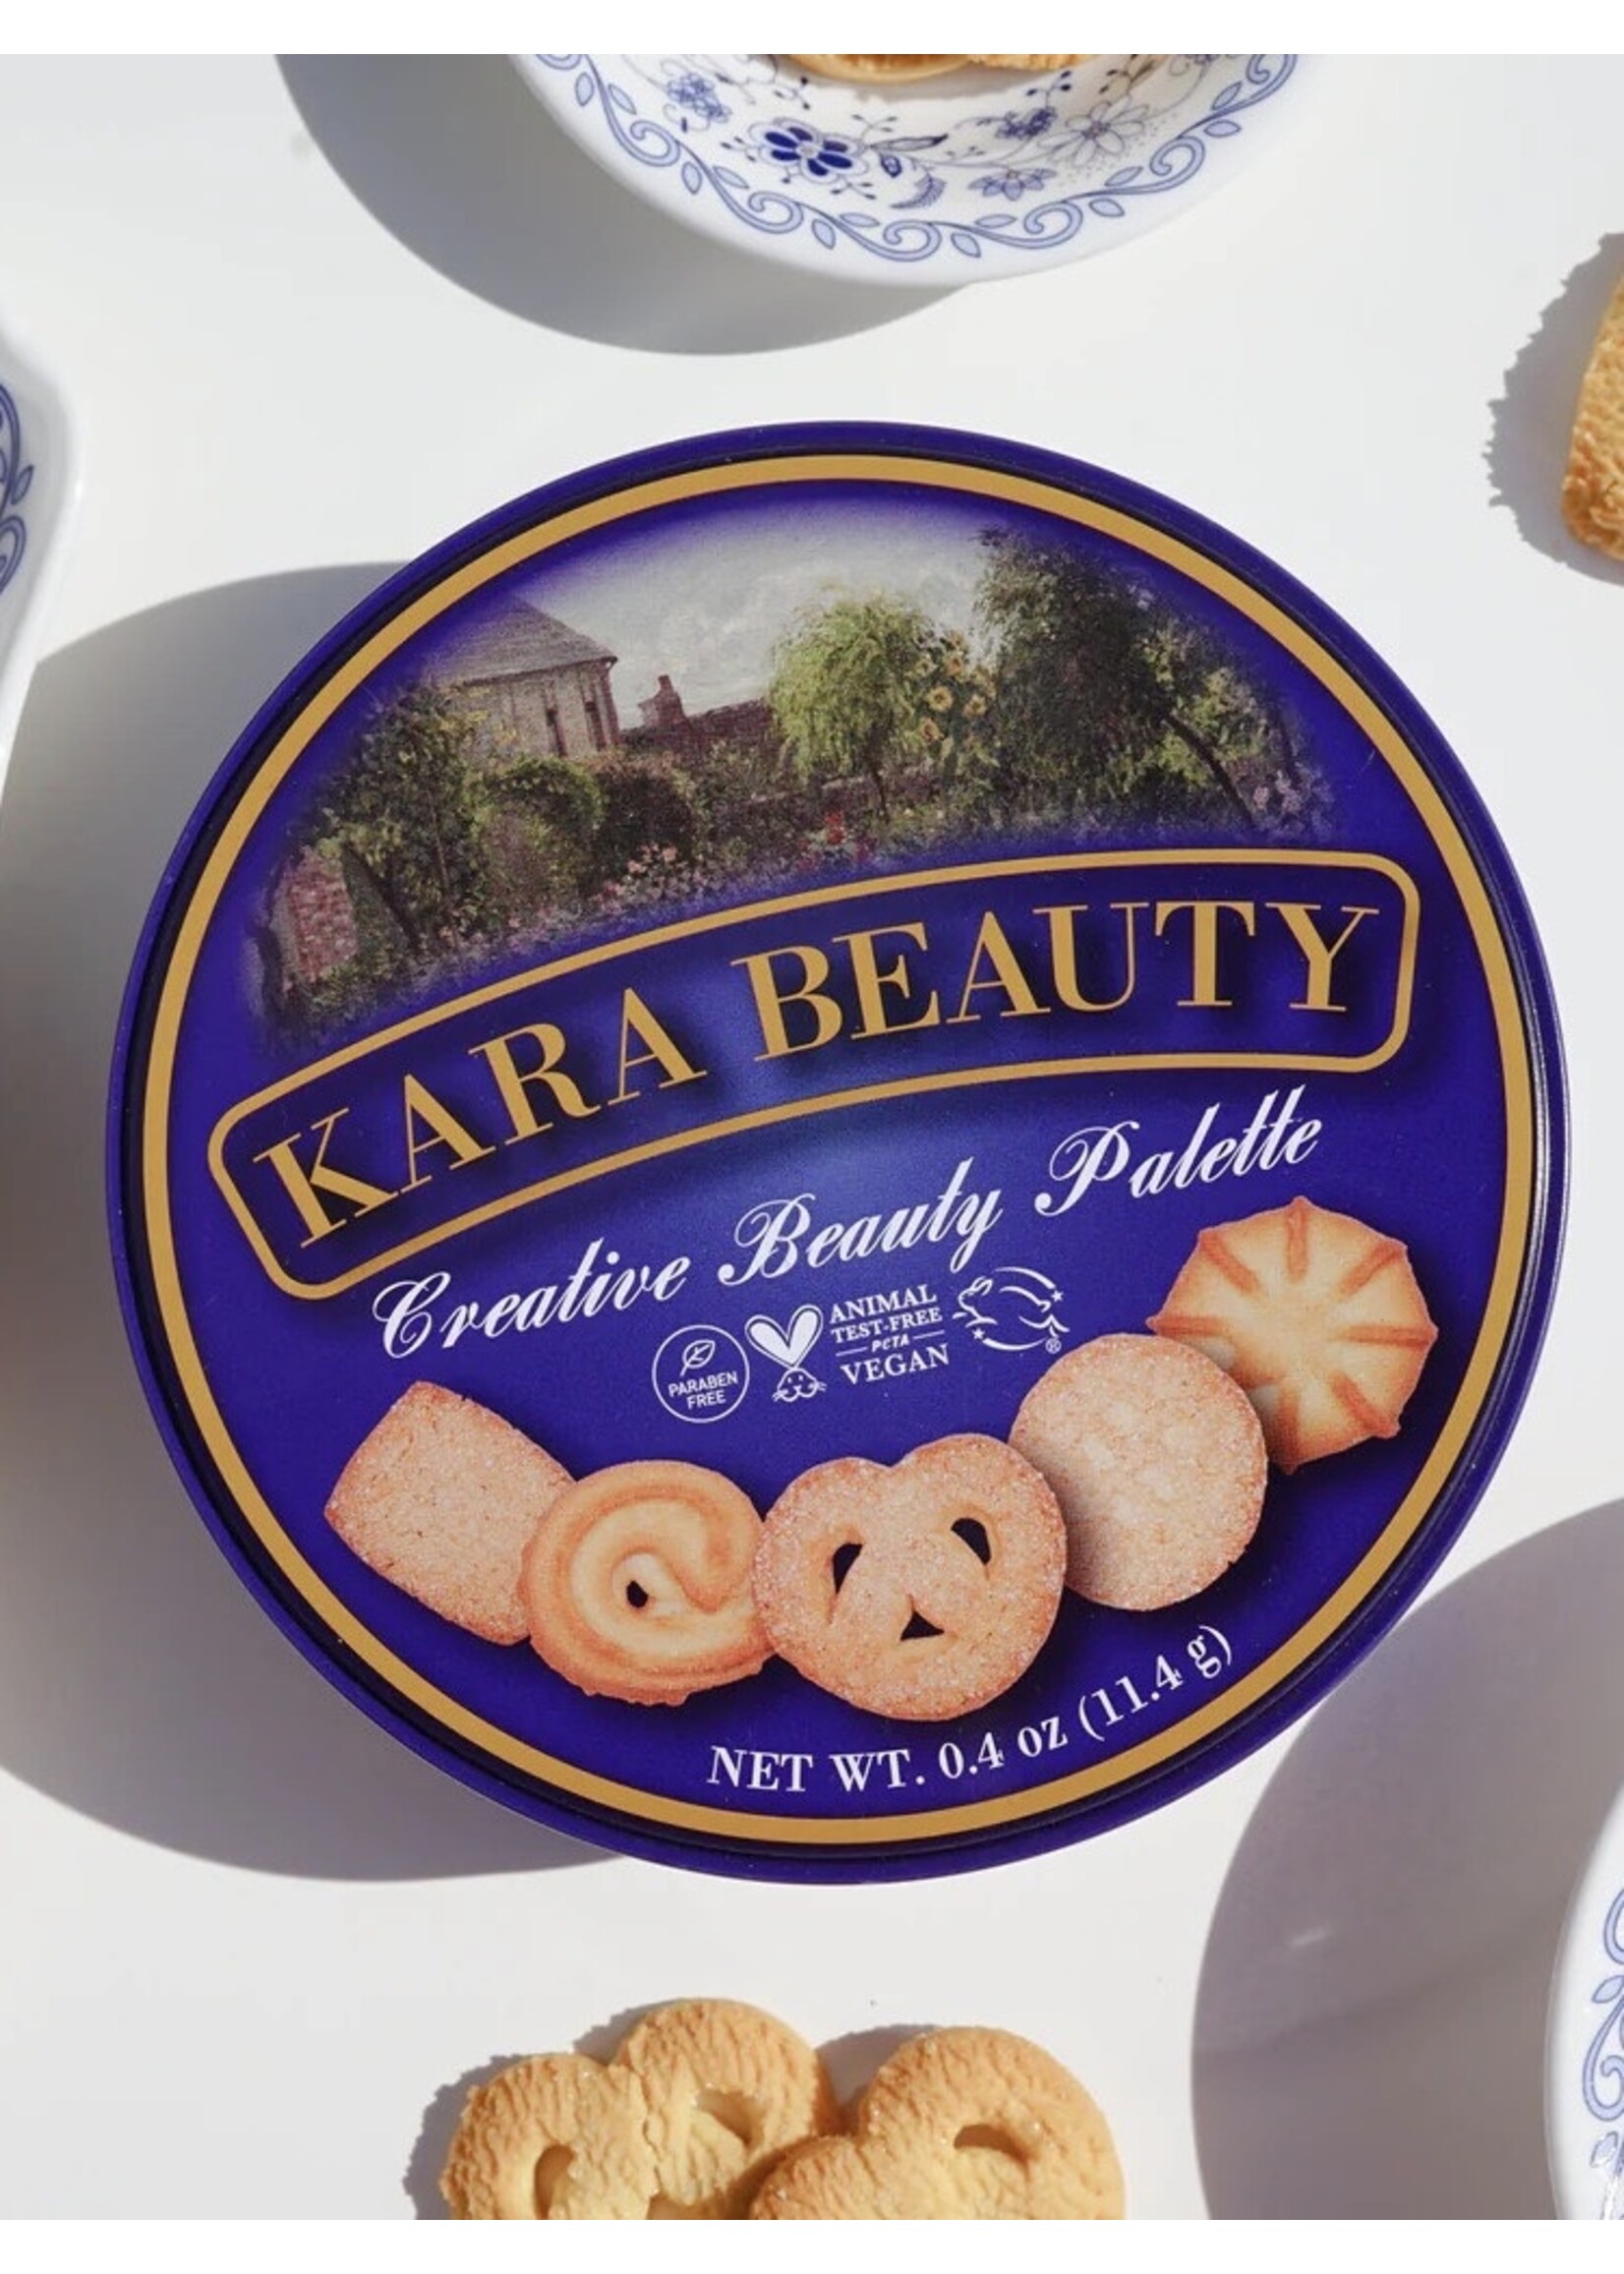 Kara Beauty Creative beauty palette "Cookie Tin" by kara Beauty